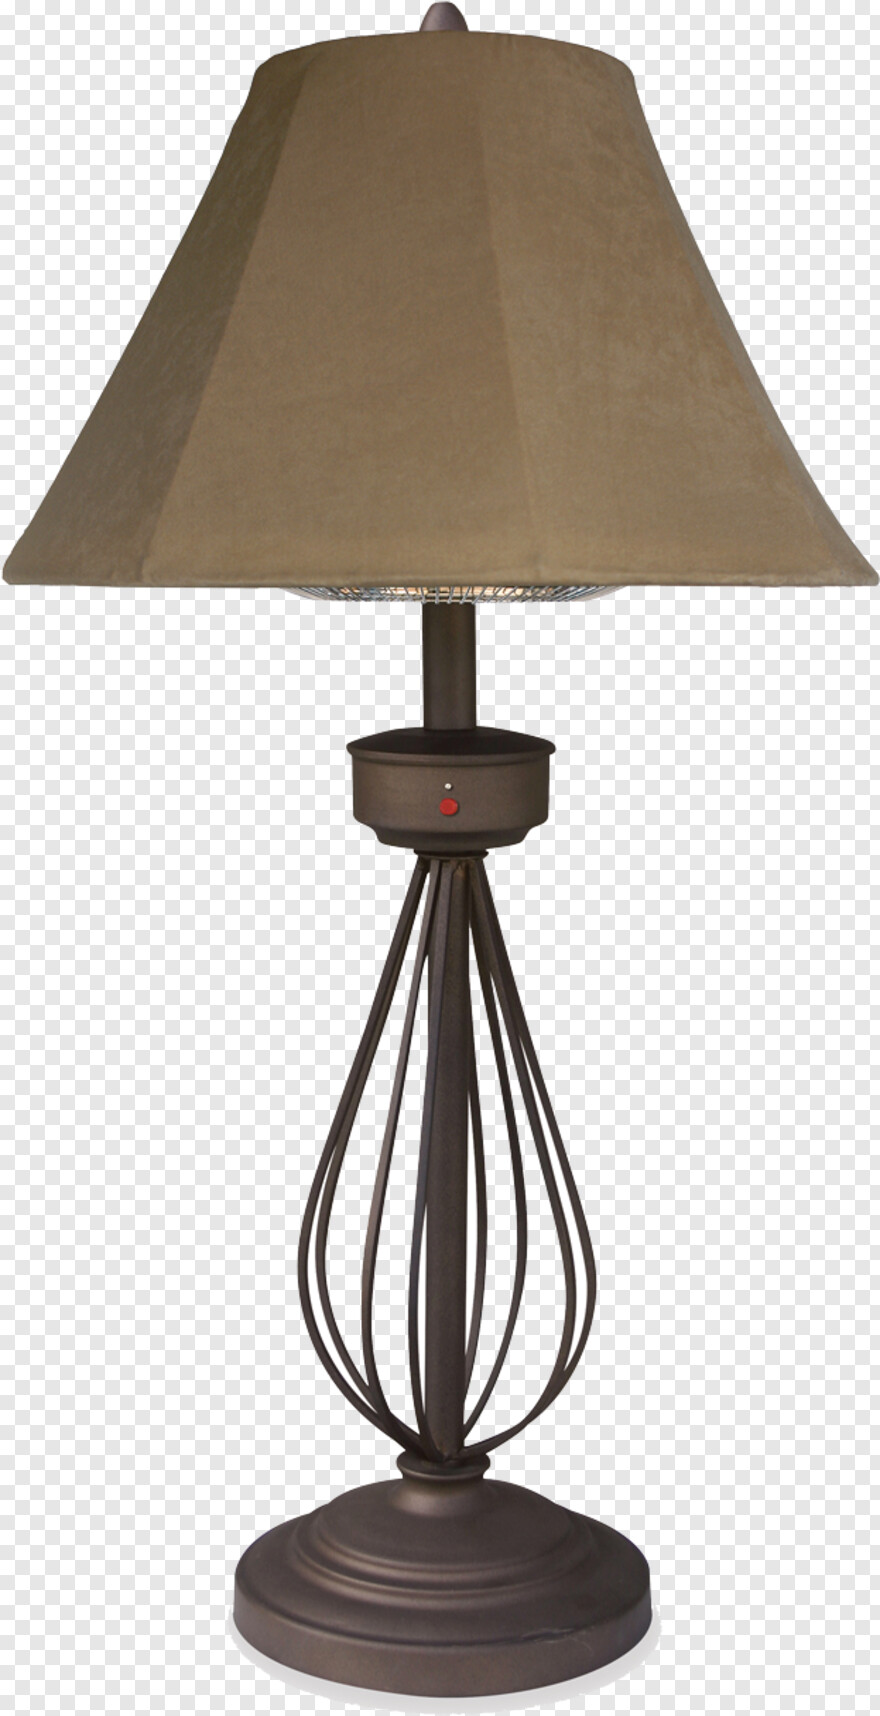 lamp # 817959